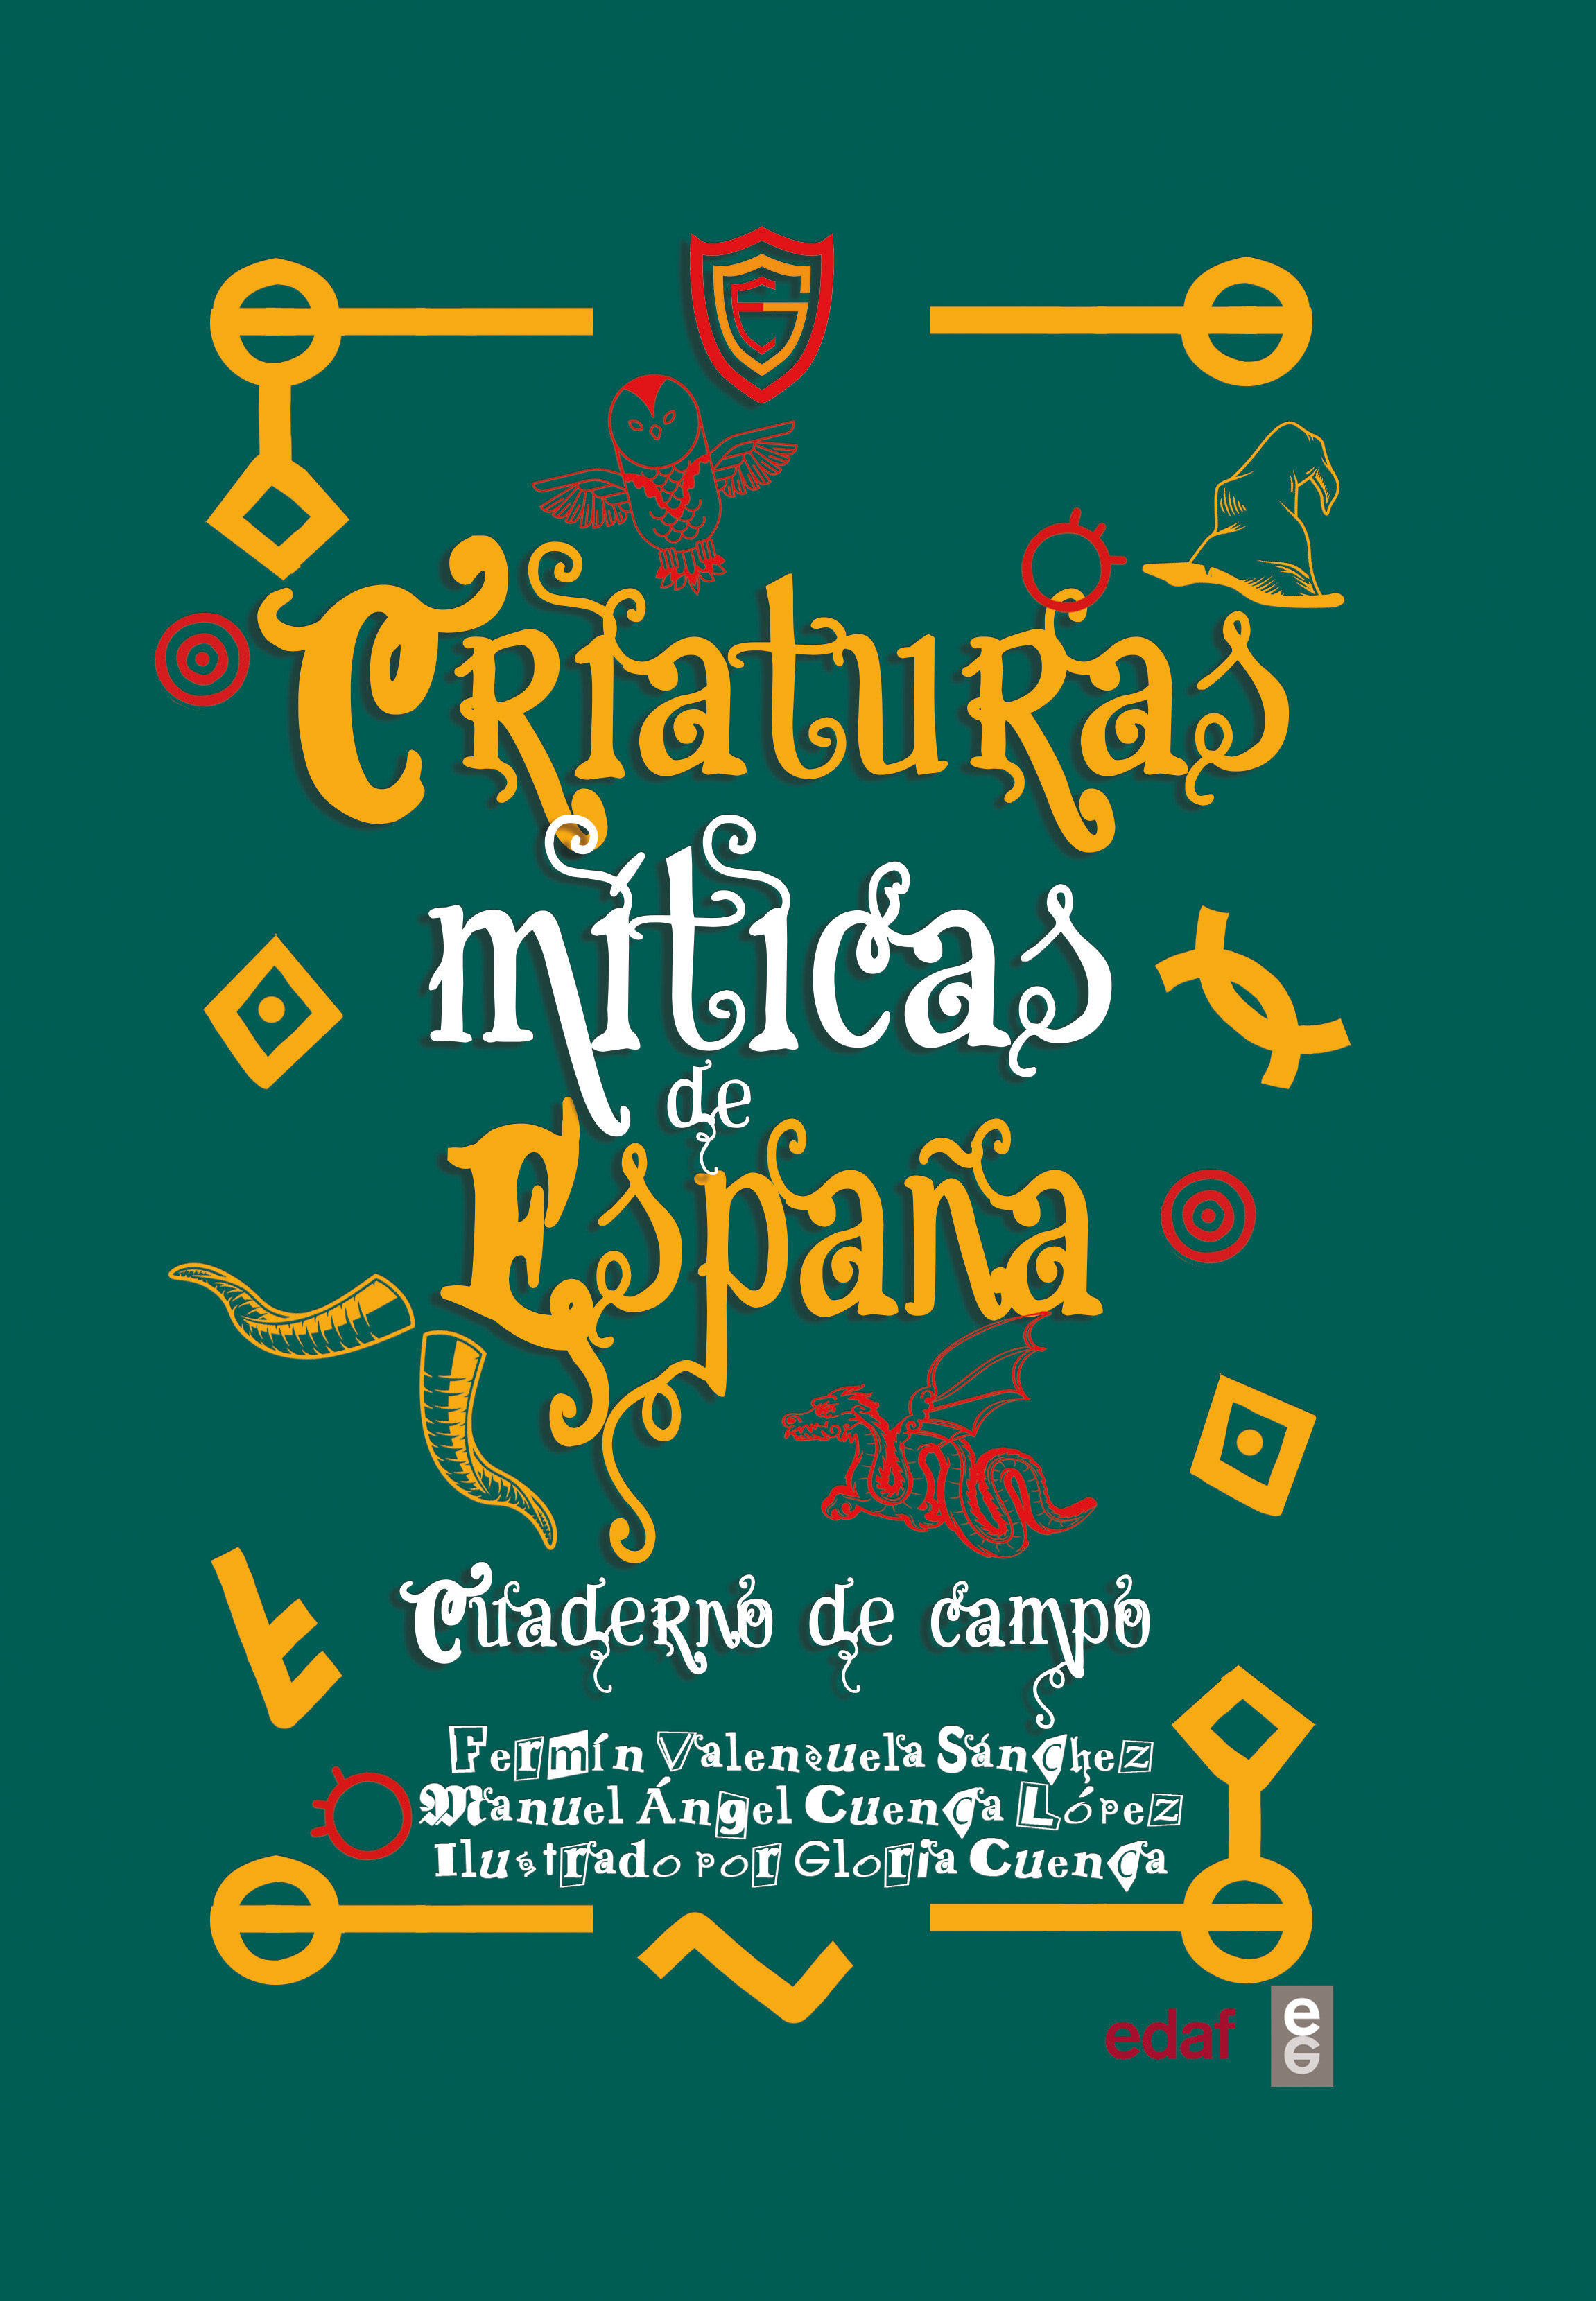 Criaturas míticas de España, cuaderno de campo